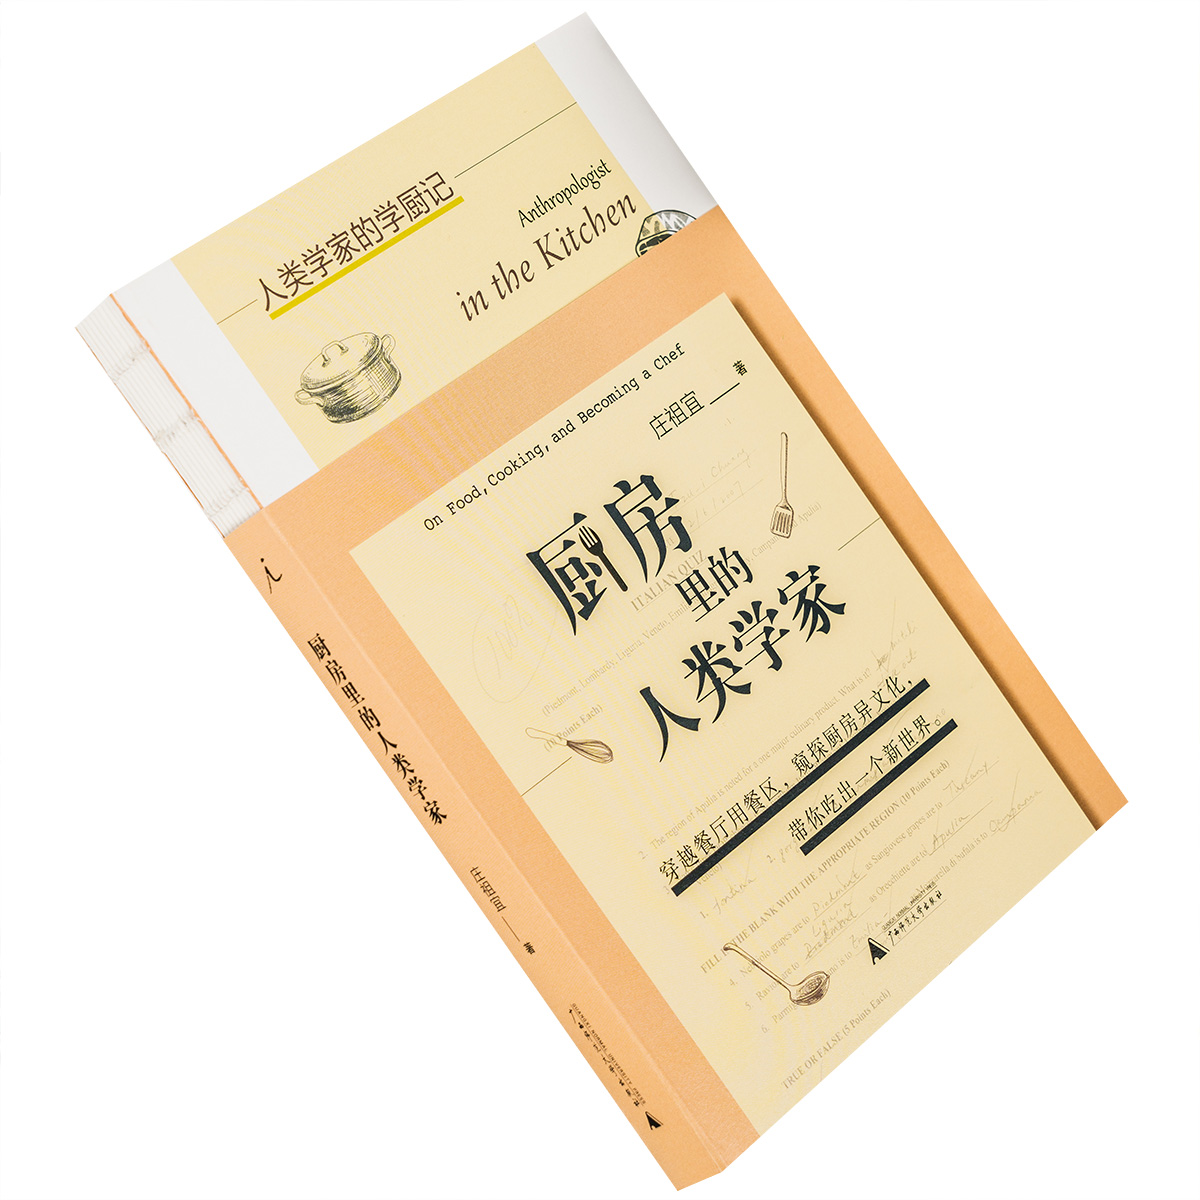 厨房里的人类学家 庄祖宜 理想国 广西师范大学出版社 正版书籍包邮